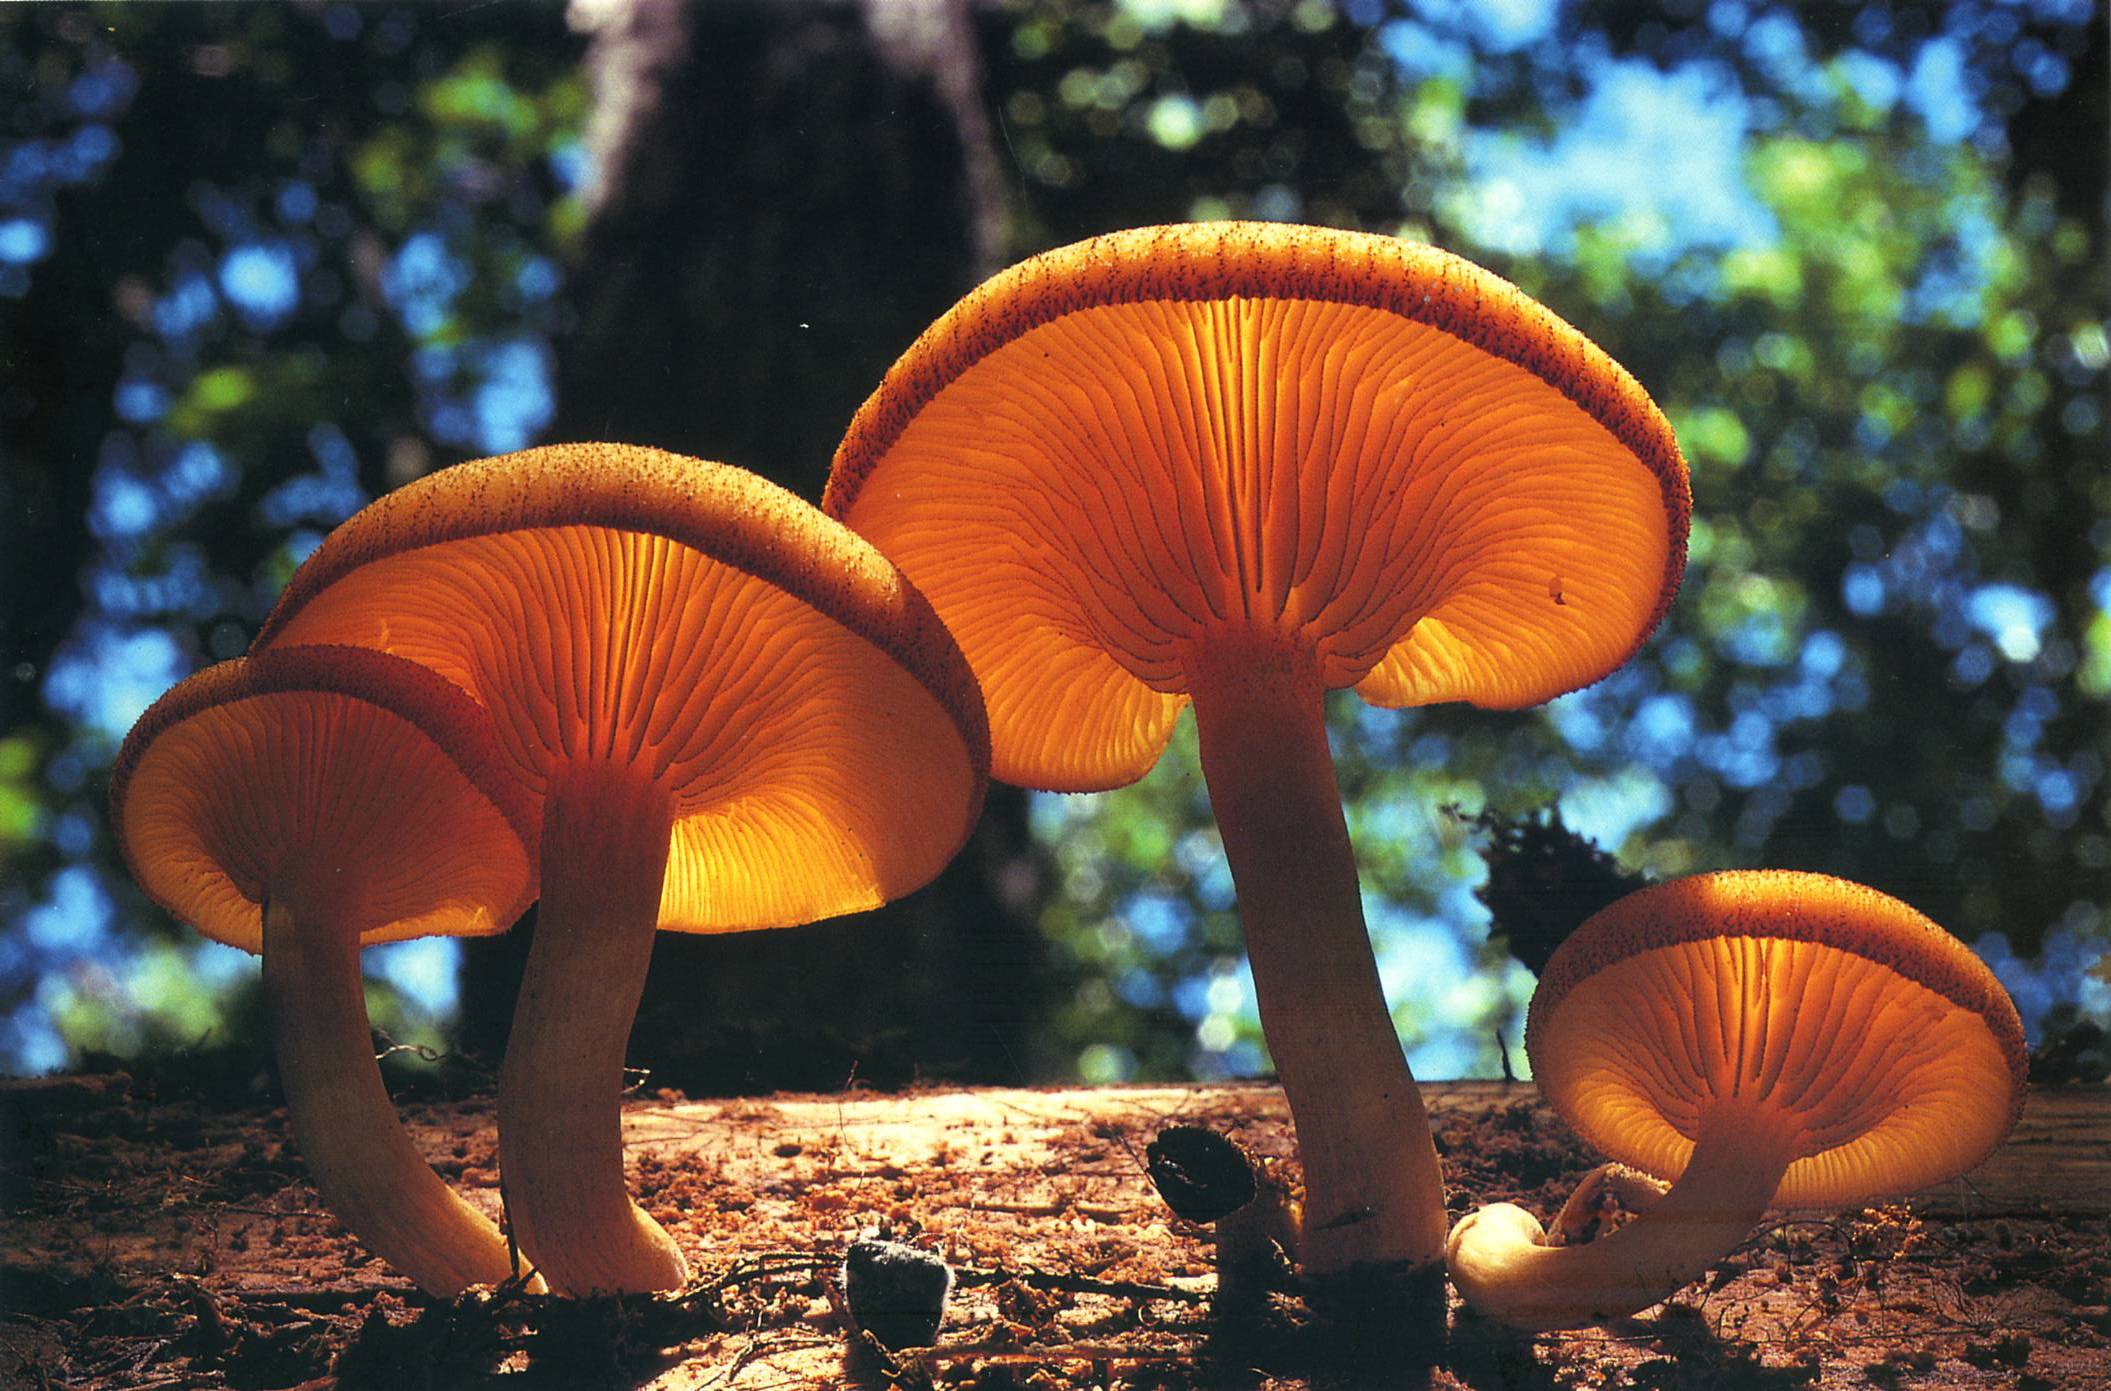 mushrooms, depth of field - desktop wallpaper